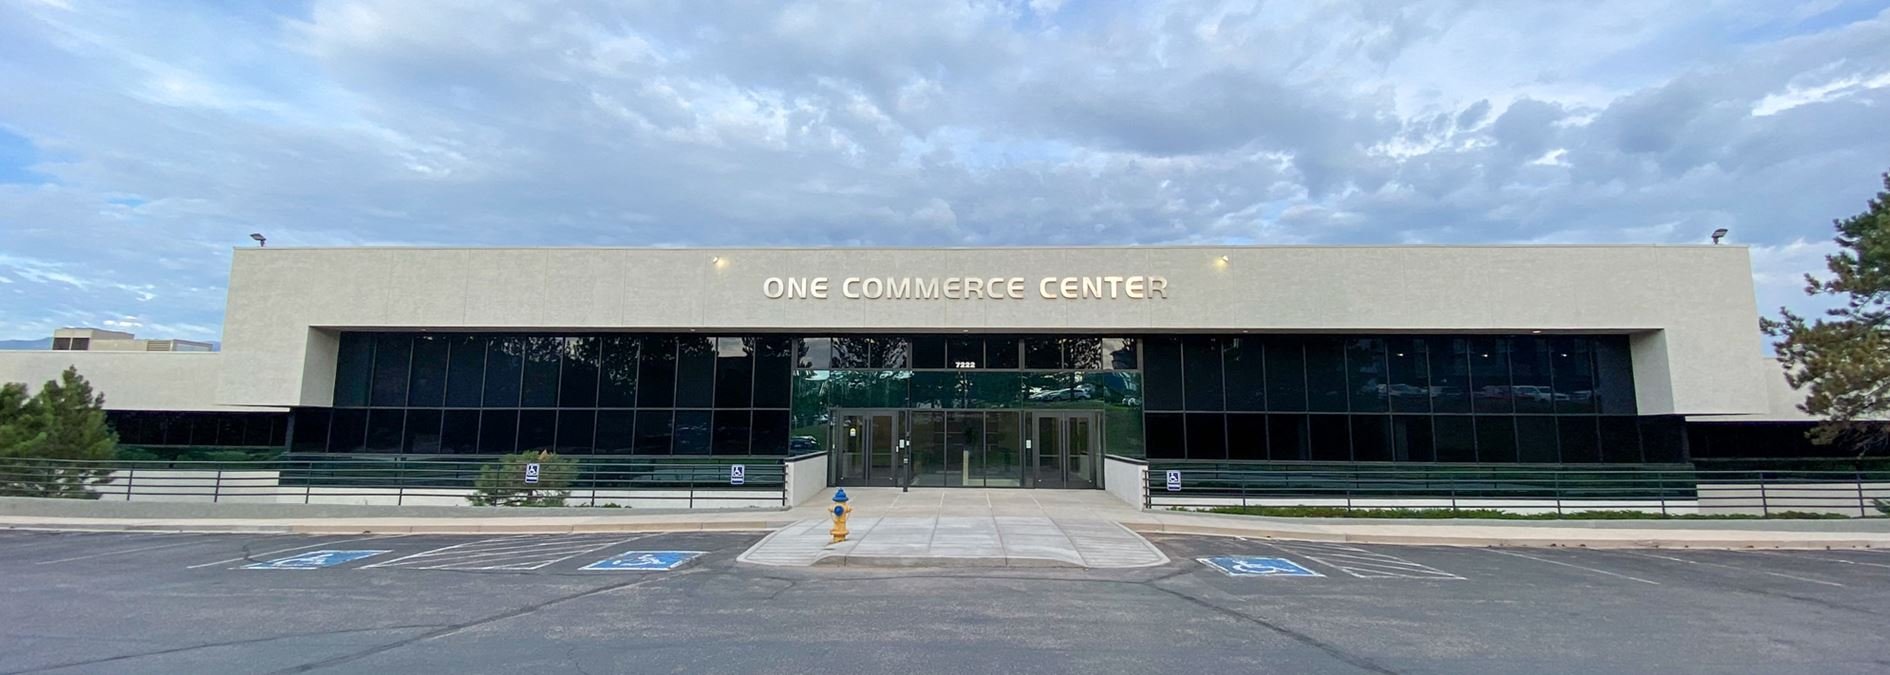 One Commerce Center